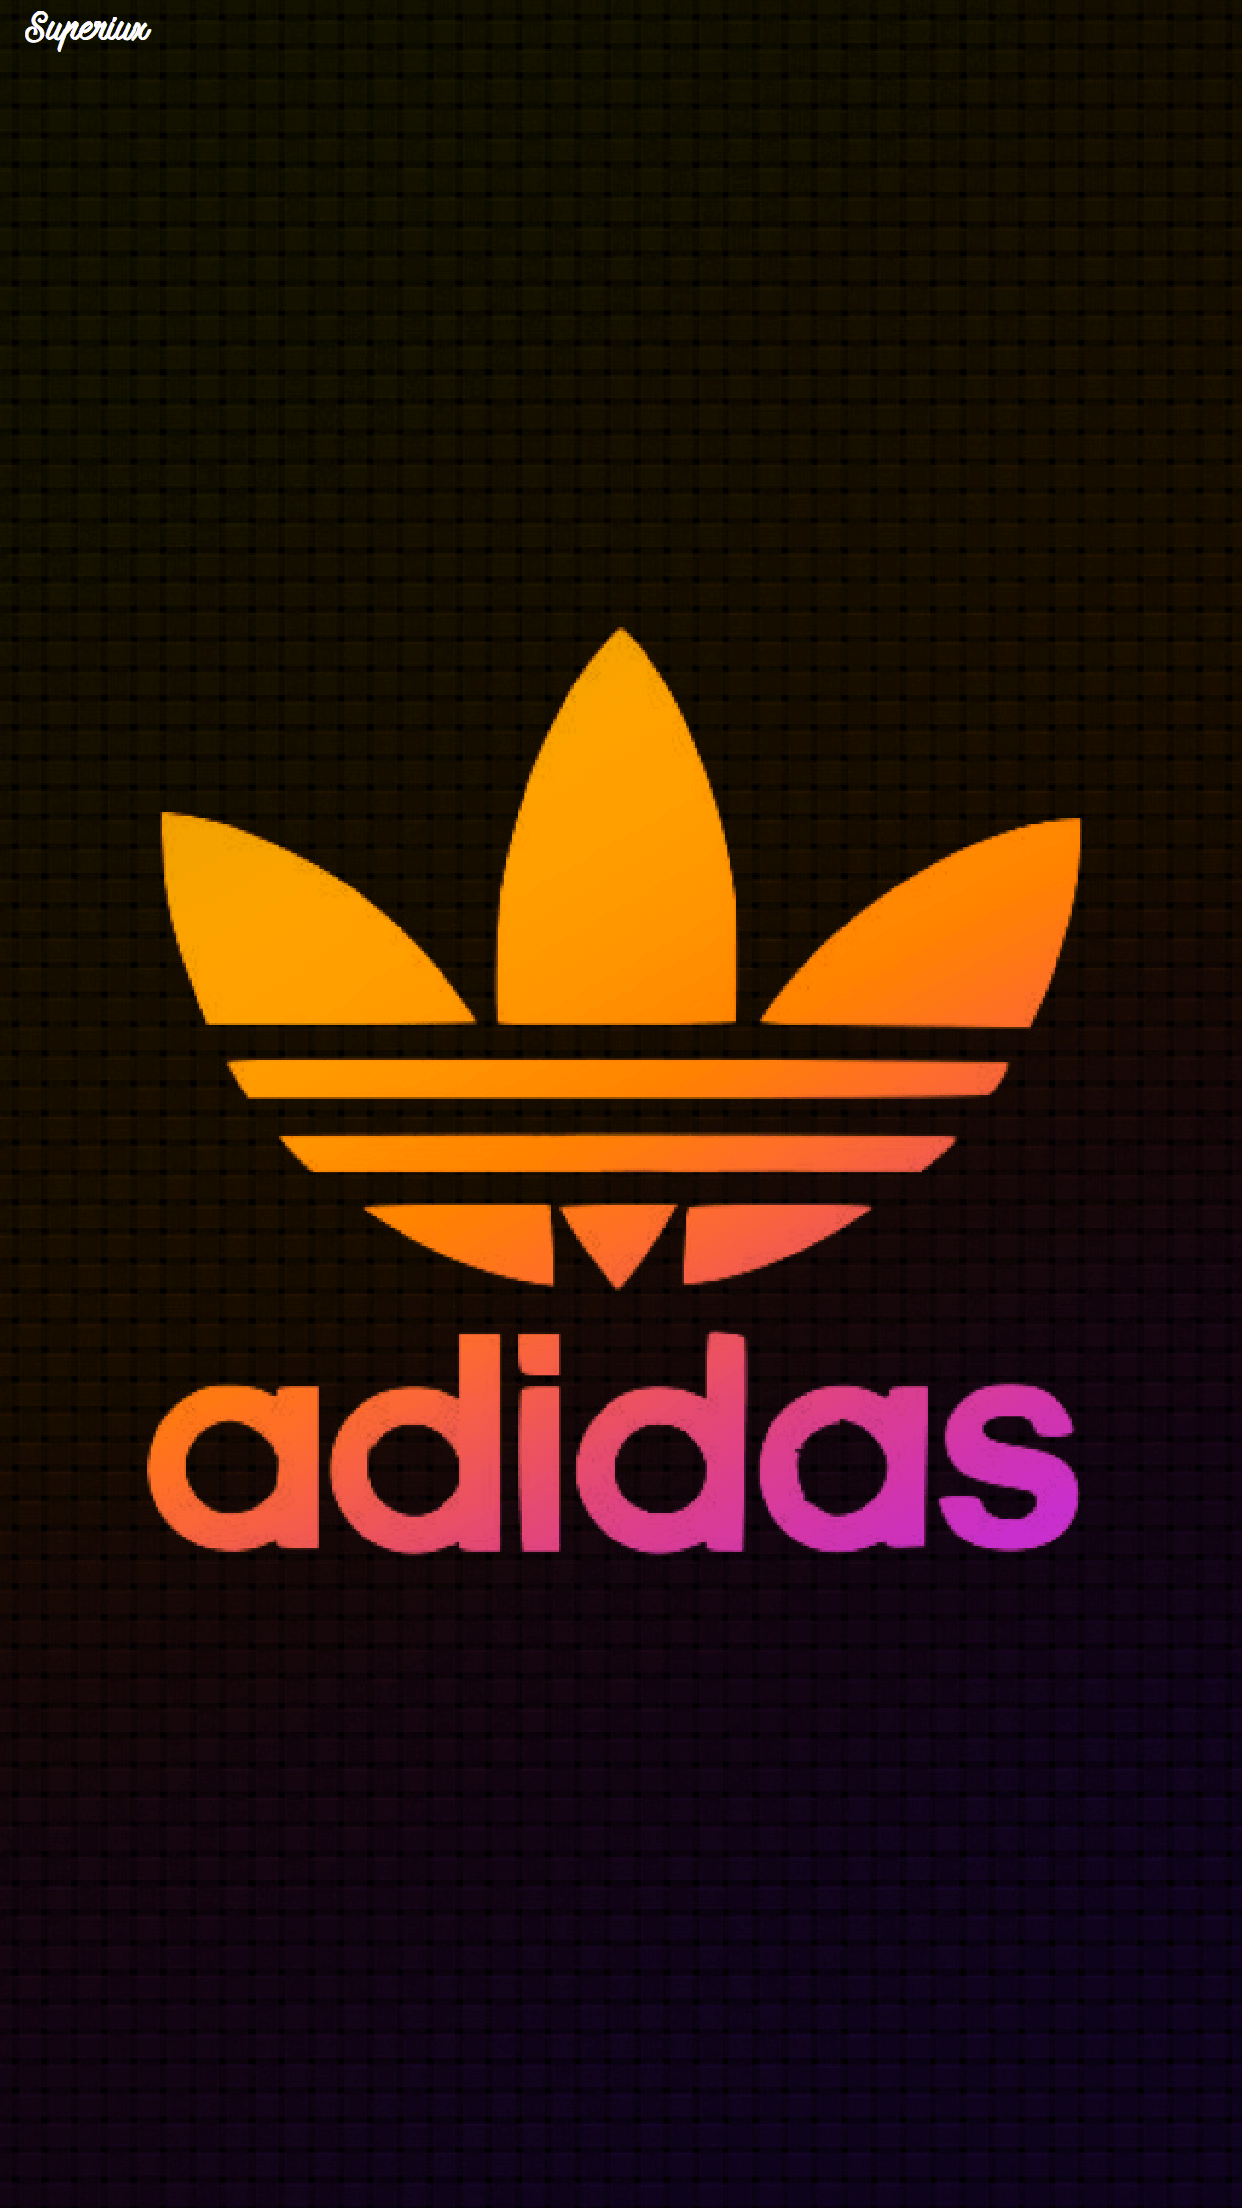 Orange Adidas Logo - Adidas Wallpaper Logo | Adidas wallpapers in 2019 | Wallpaper, Logos ...